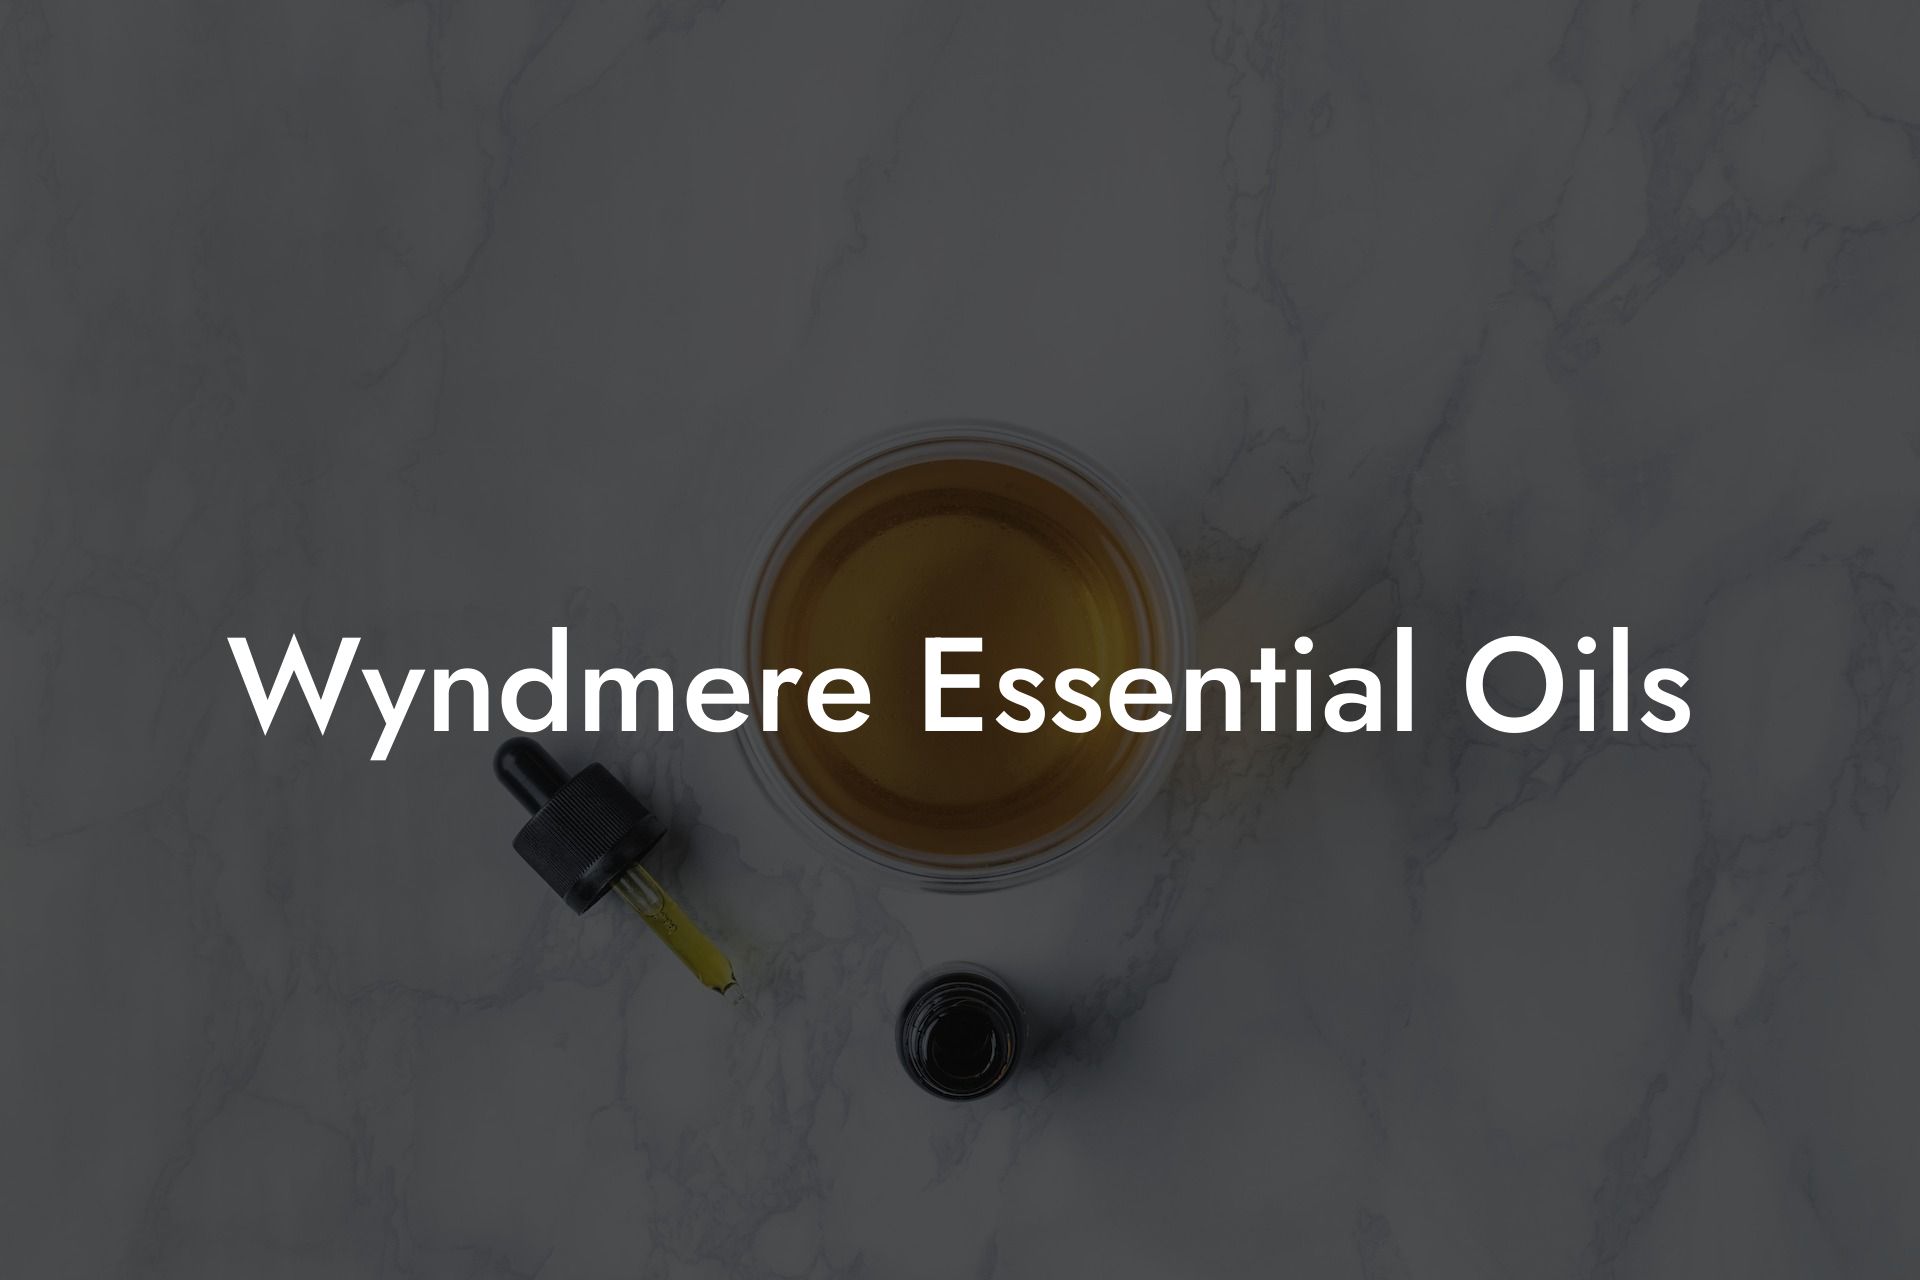 Wyndmere Essential Oils